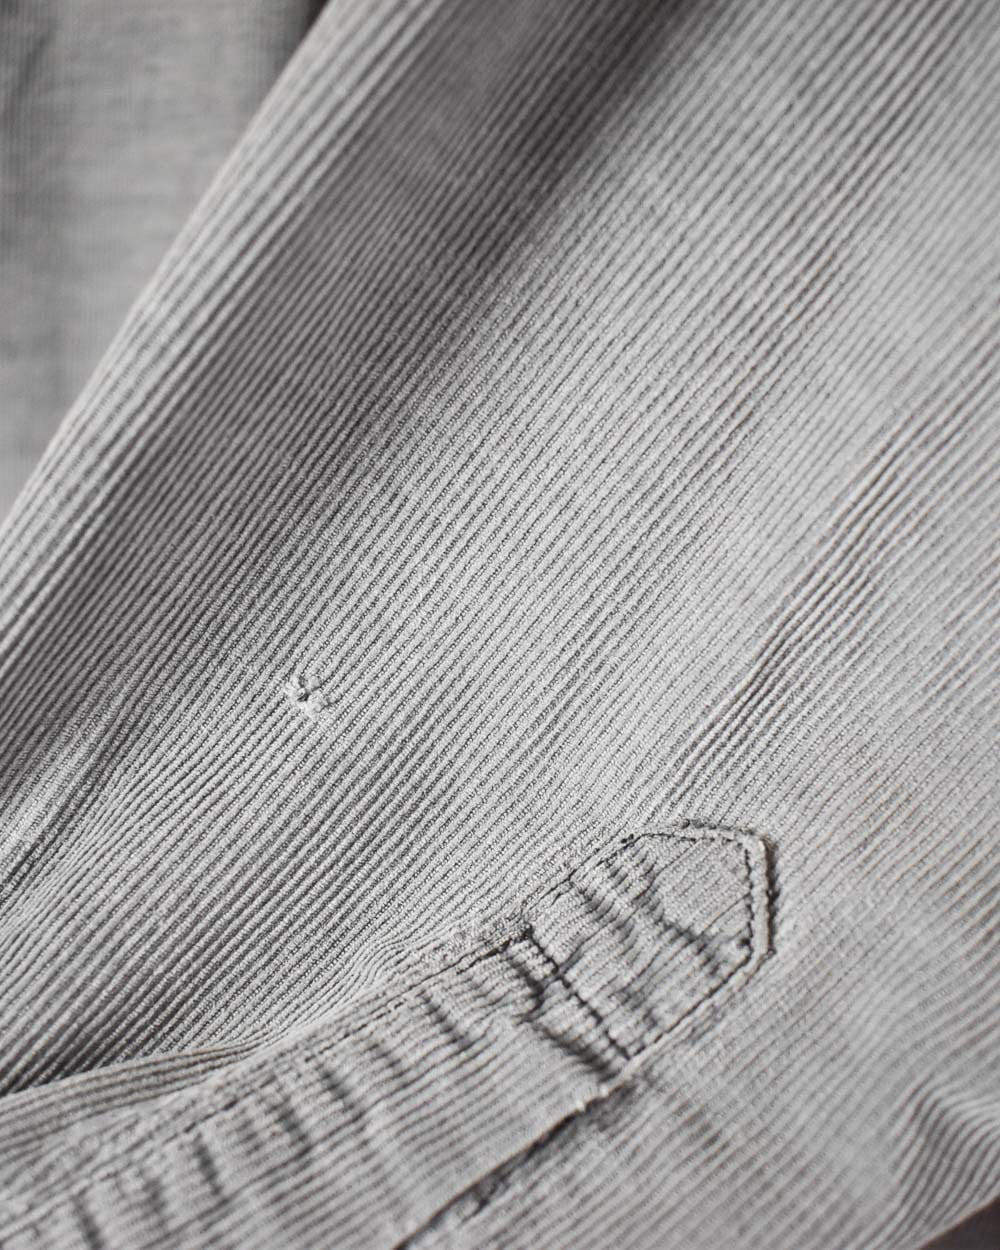 Grey Levi's Corduroy Shirt - Large